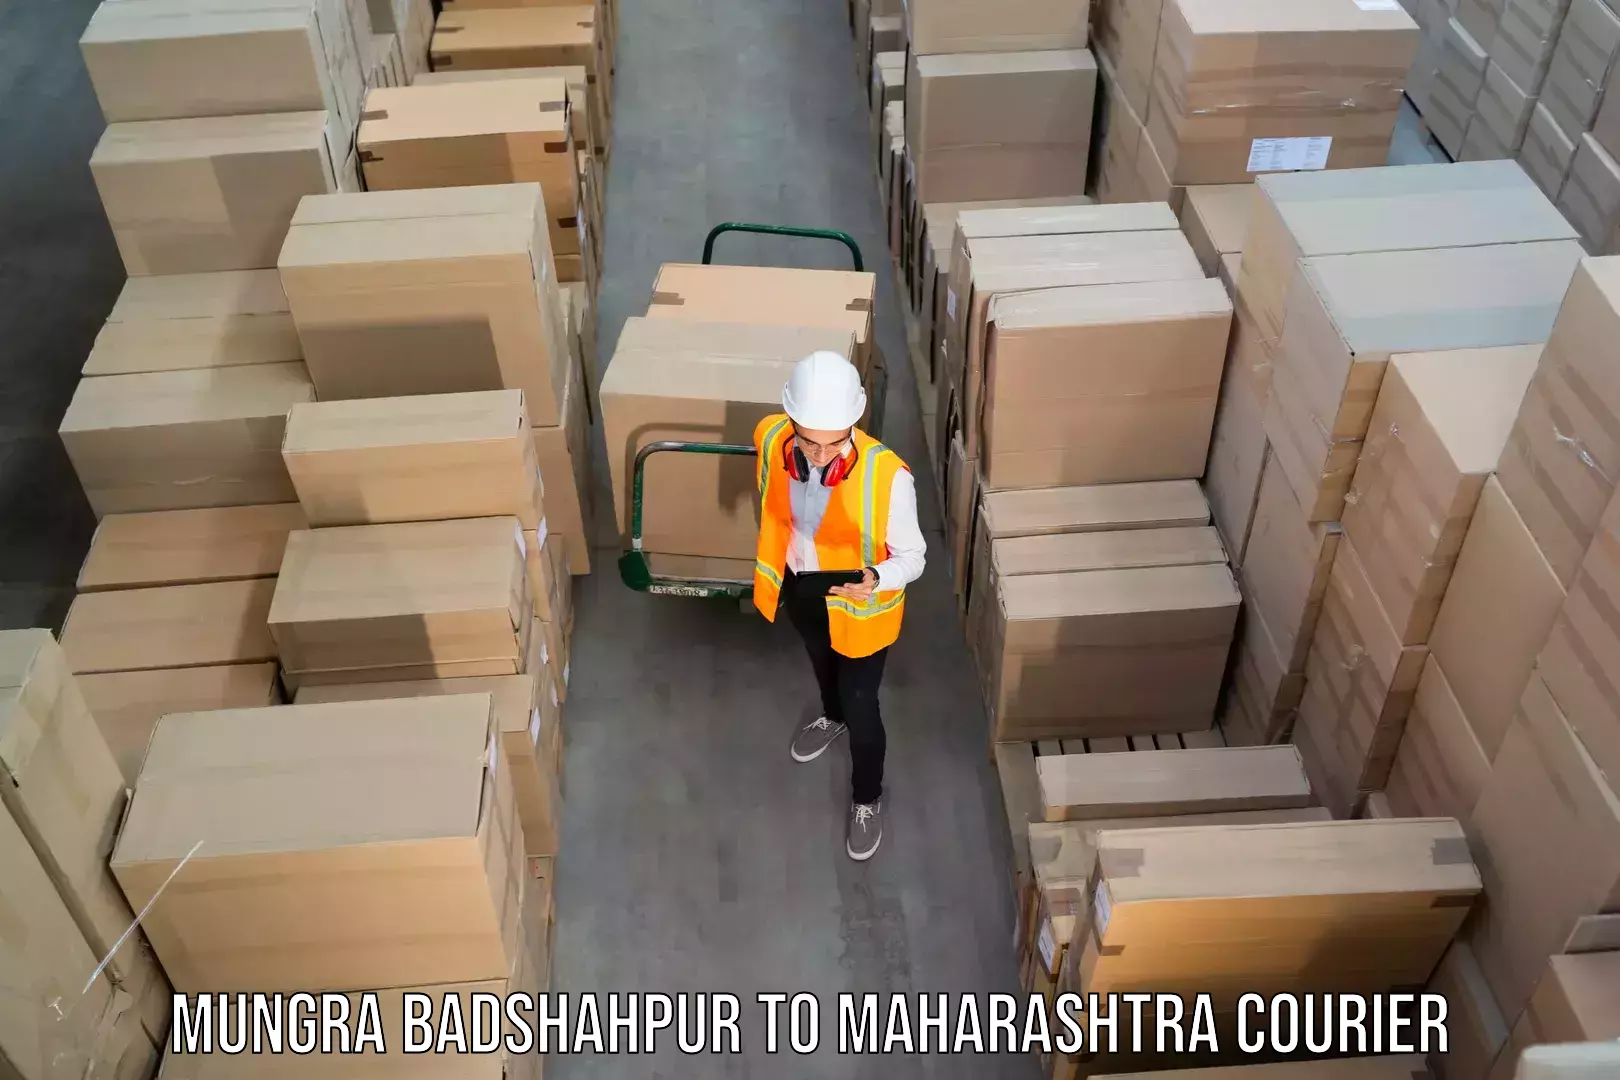 Premium courier solutions Mungra Badshahpur to Mahur